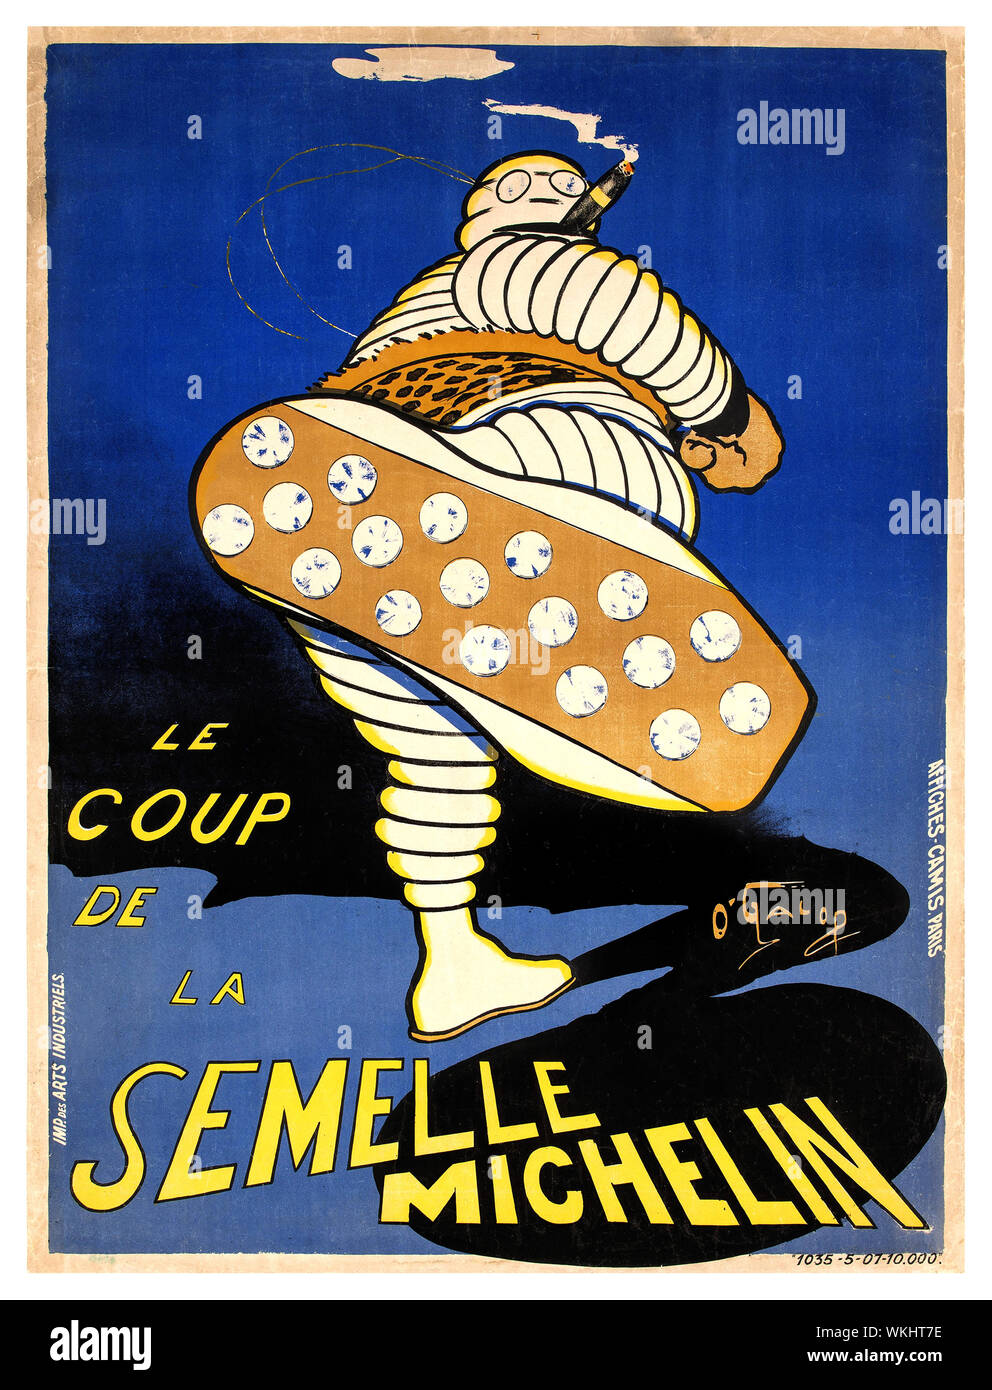 MICHELIN Jahrgang 1900 Plakat "Le Coup de la Semelle Michelin", 1905 Farblithographie "Sole" die Michelin Reifen mit Spikes. Die neue "Michelin Sole Lauffläche mit schuhnägeln wurde eingeführt, der Grip und die Lebensdauer der Reifen zu verbessern. O'Galop, Pseudonym von Marius Rossillon war ein französischer Künstler und Karikaturist, am besten für die Erstellung von Bibendum, die Michelin. Stockfoto